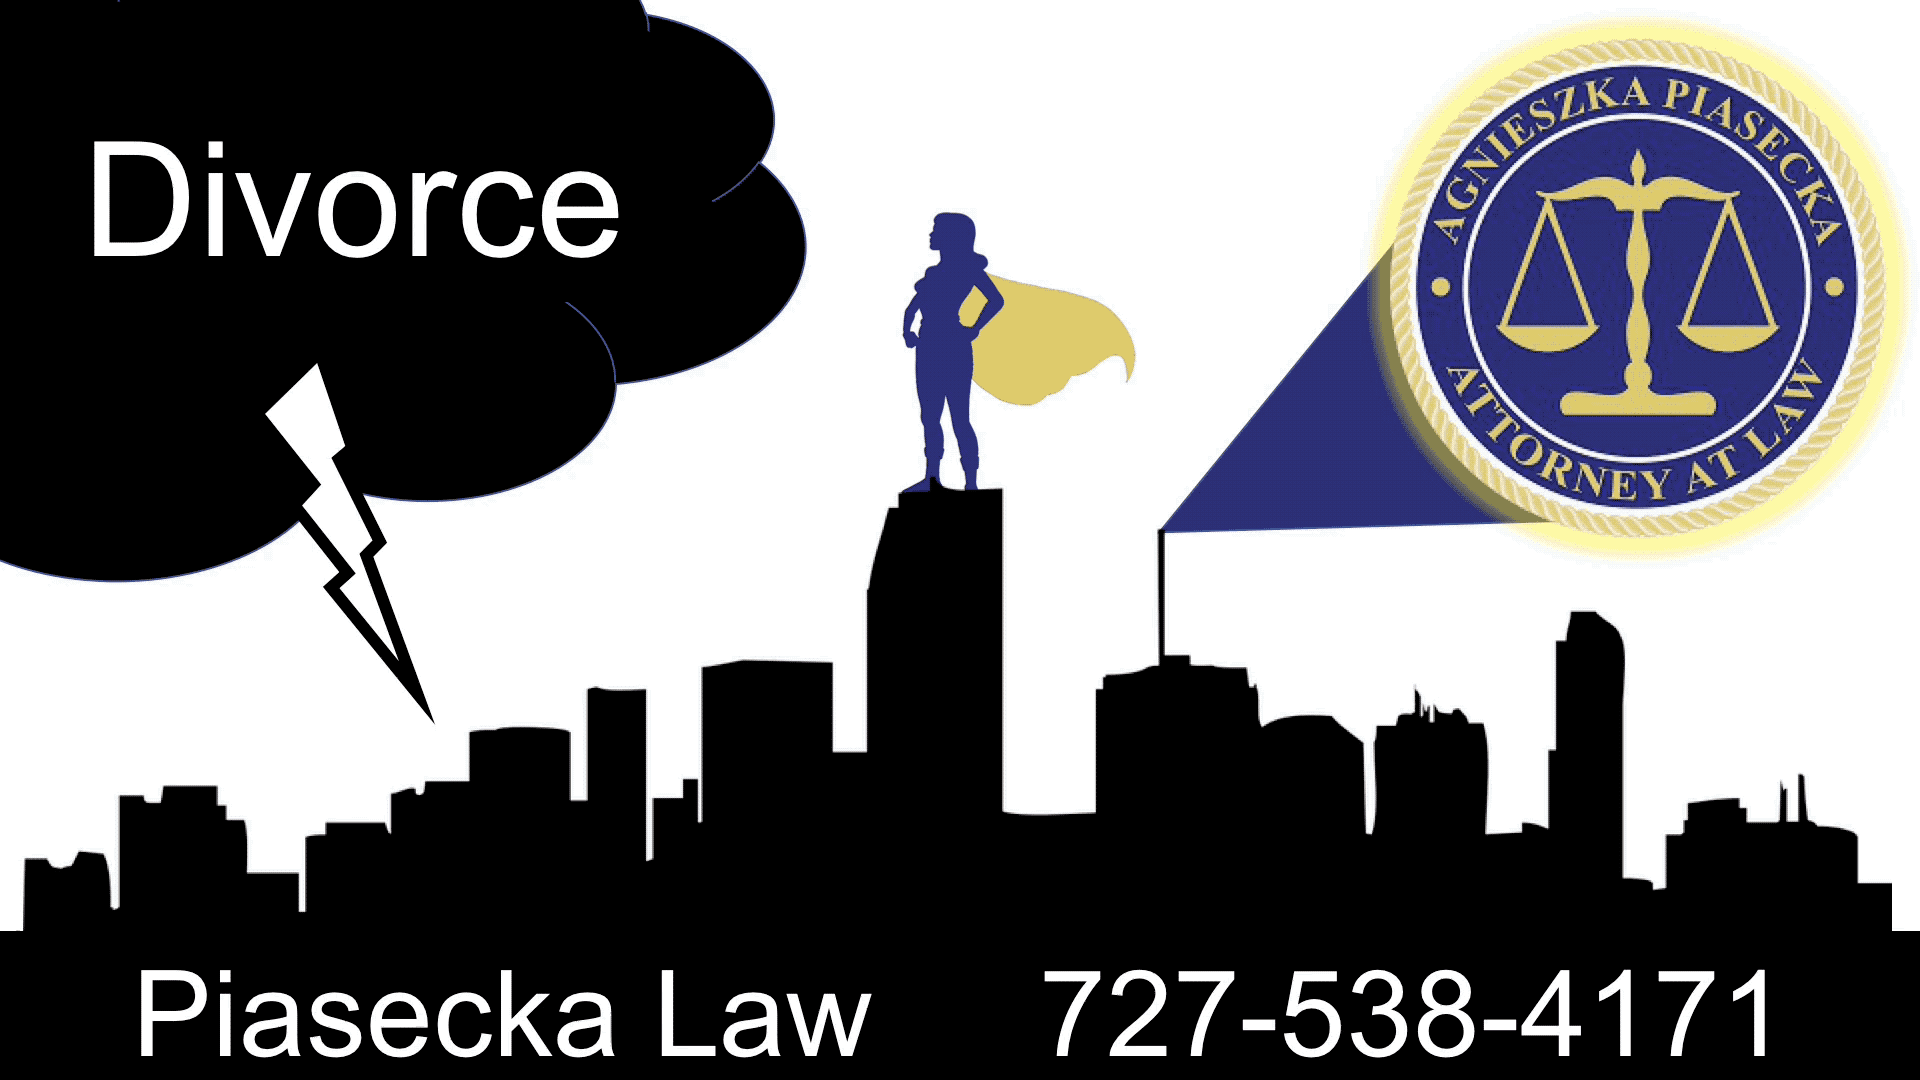 Divorce Aga-Attorney-Agnieszka-Aga-Piasecka-Divorce-Lawyer-Clearwater-Florida-Divorce Clearwater Family Law / Divorce / Adoptions / Prawo Rodzinne / Rozwody / Adopcje